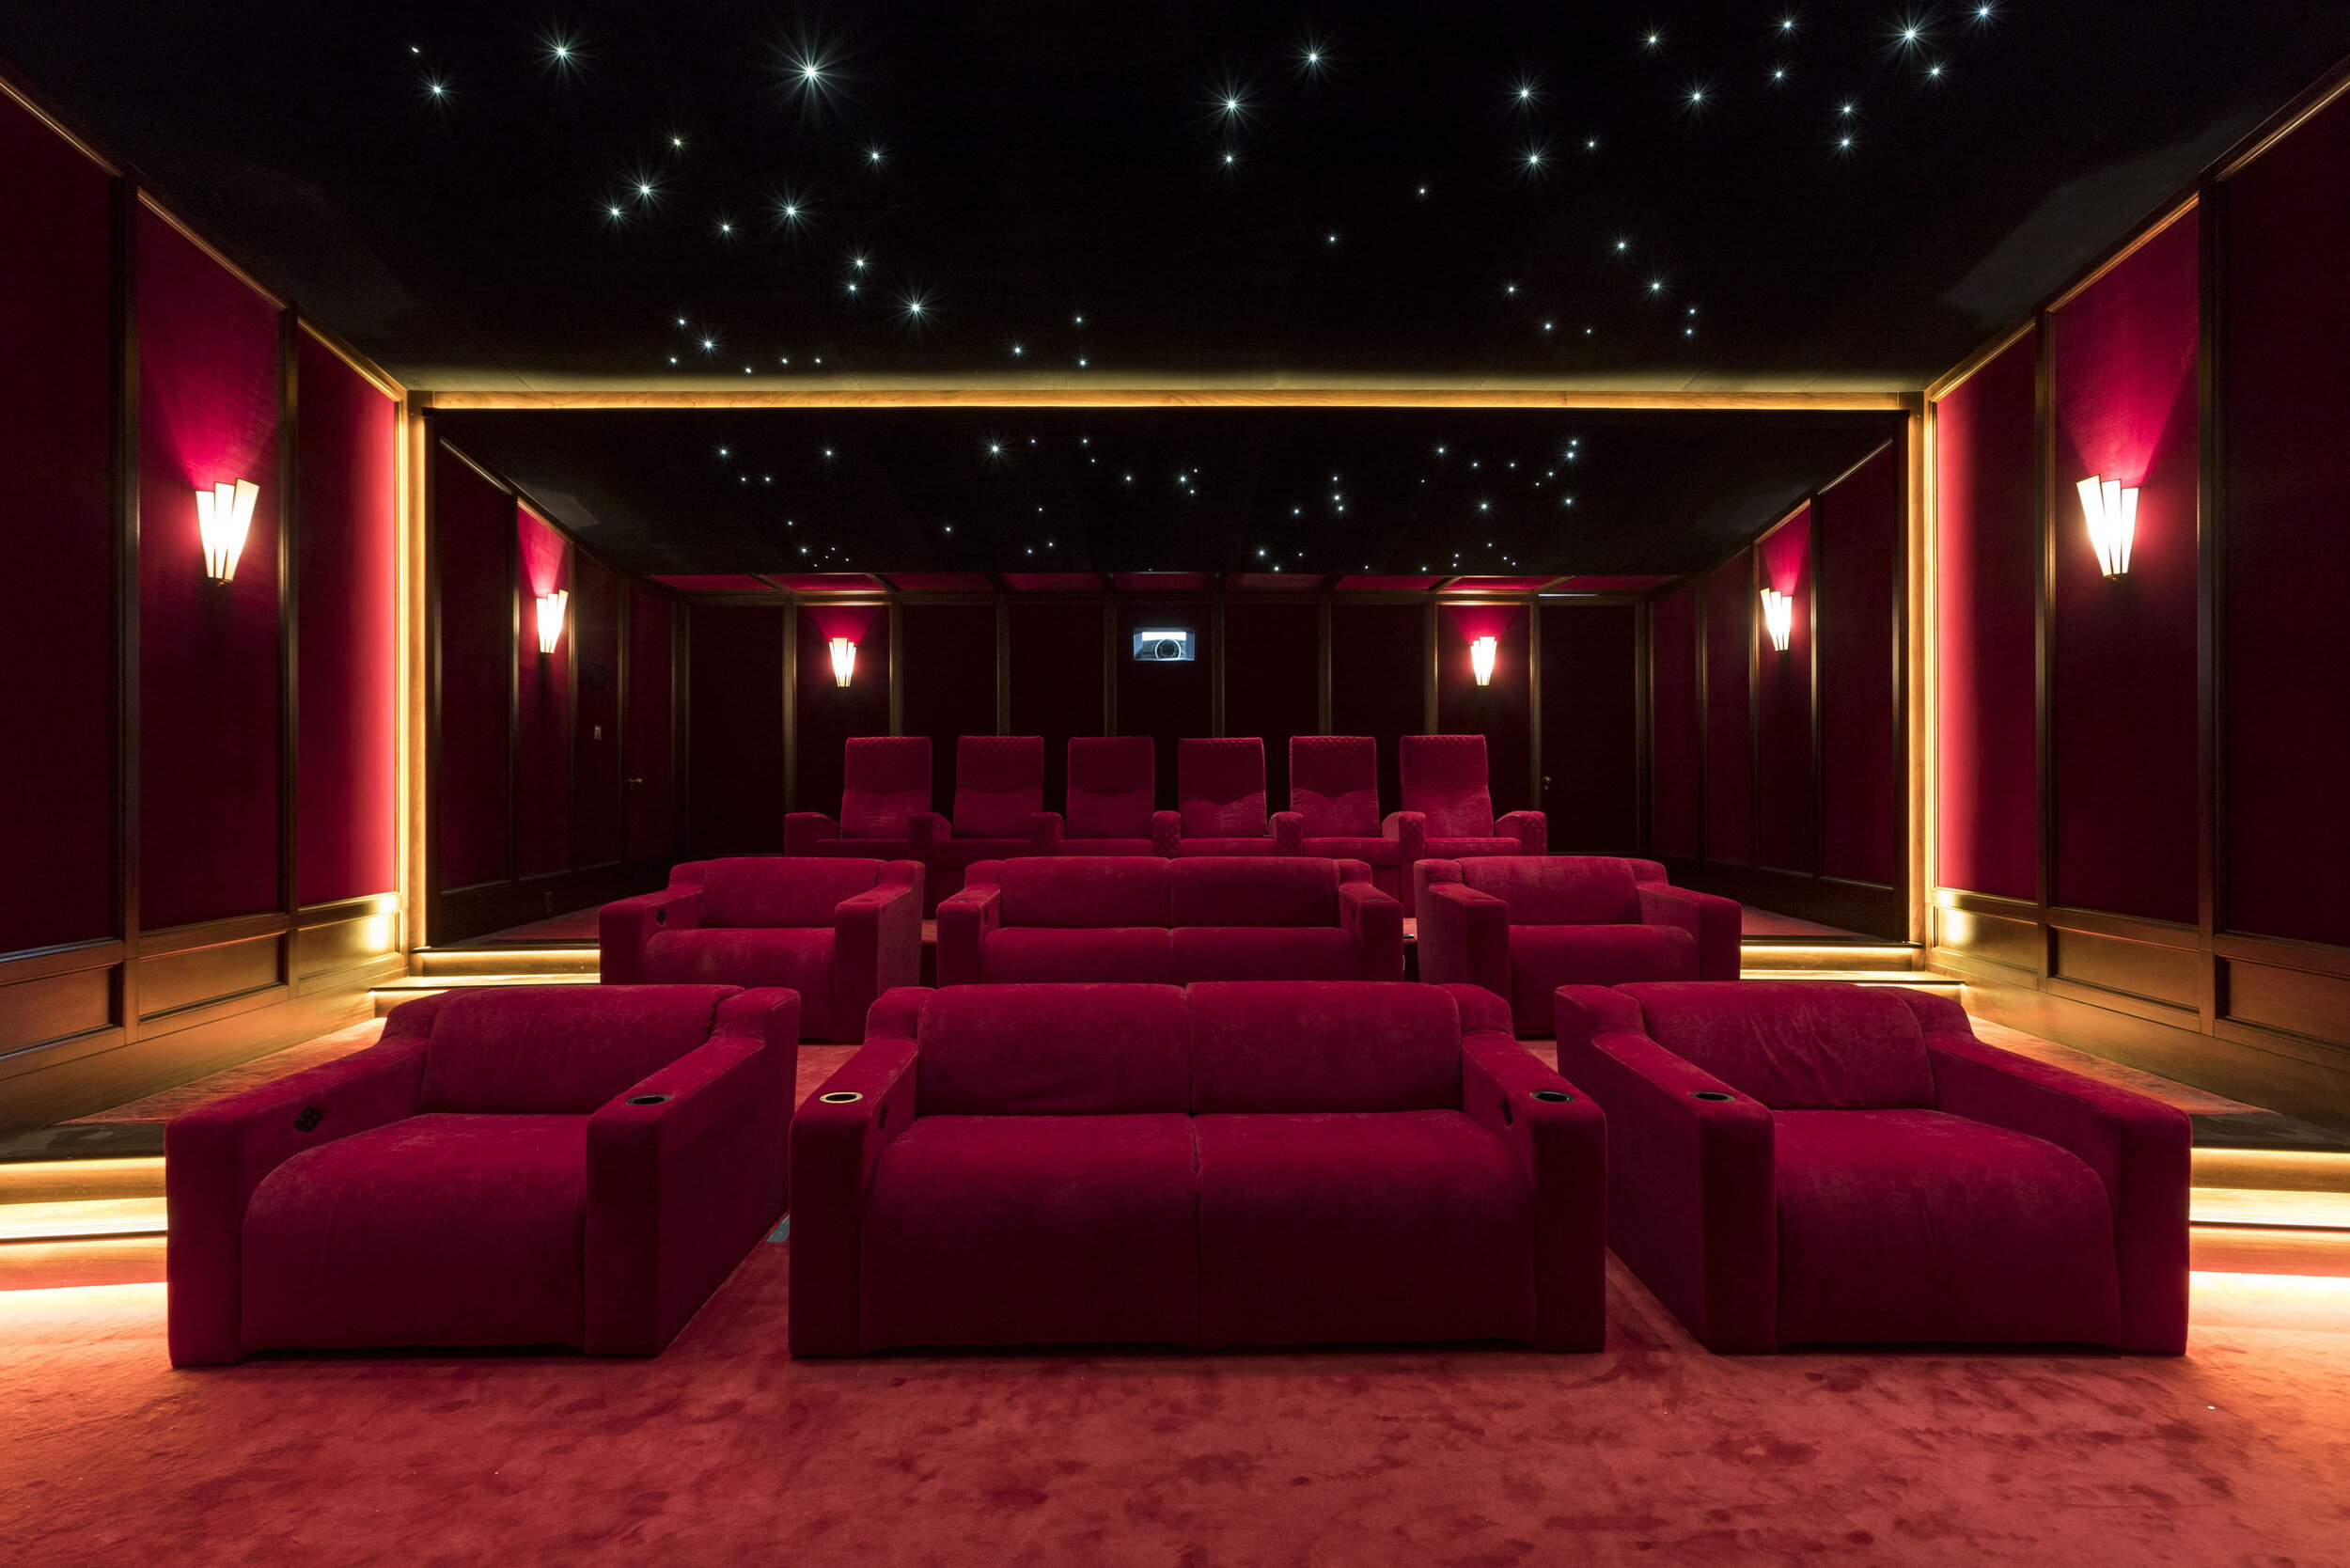 private cineam room designed sound system thebestshot.co.uk.jpg